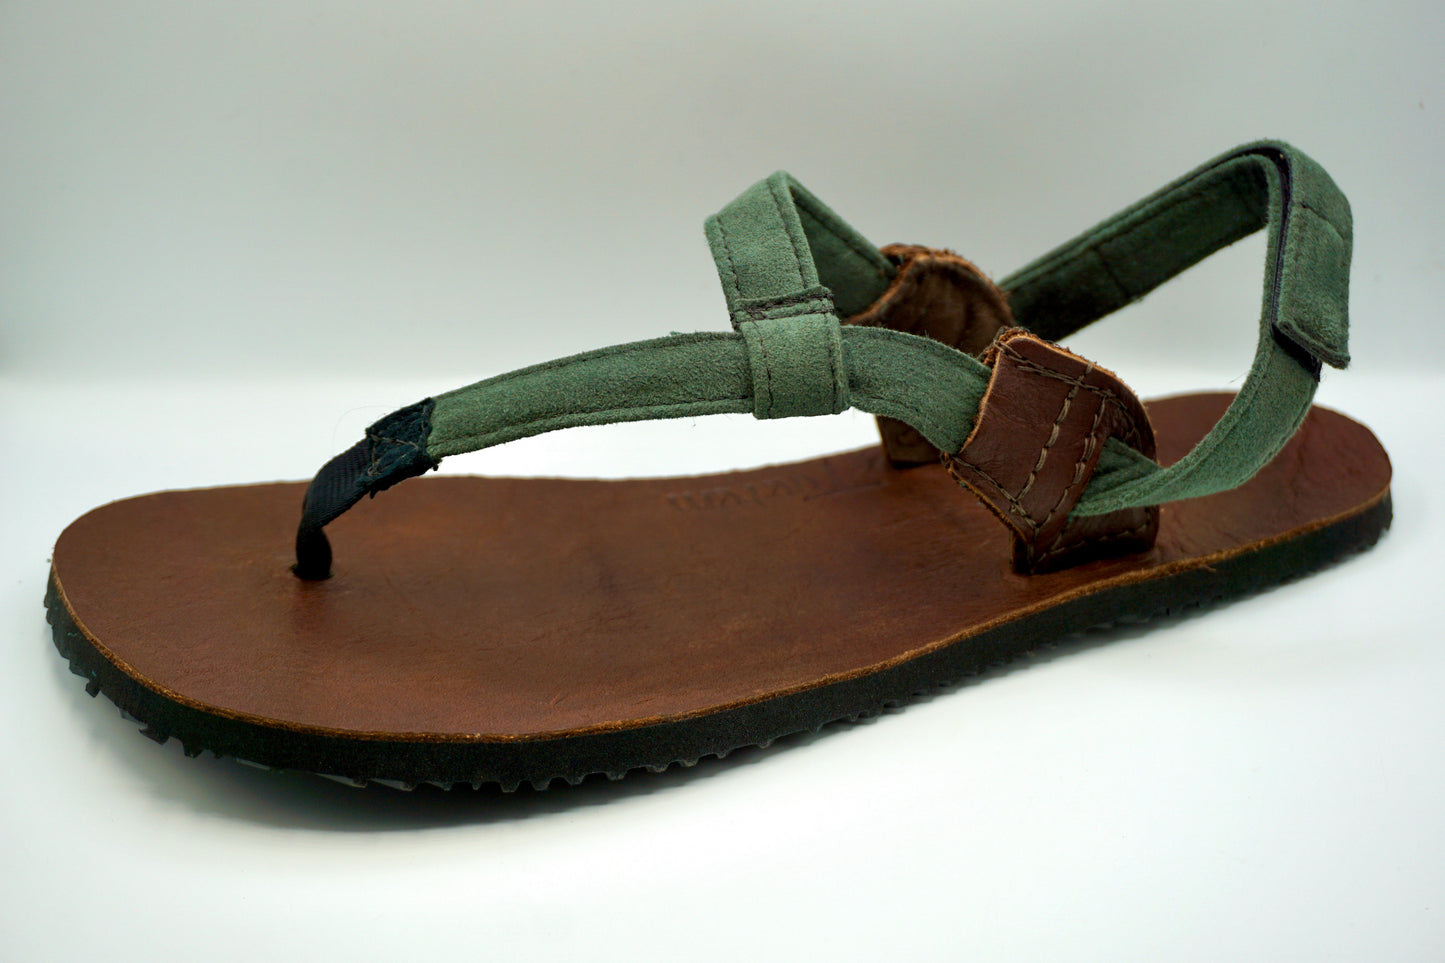 JackRabbit Sandals ALPHA Leather